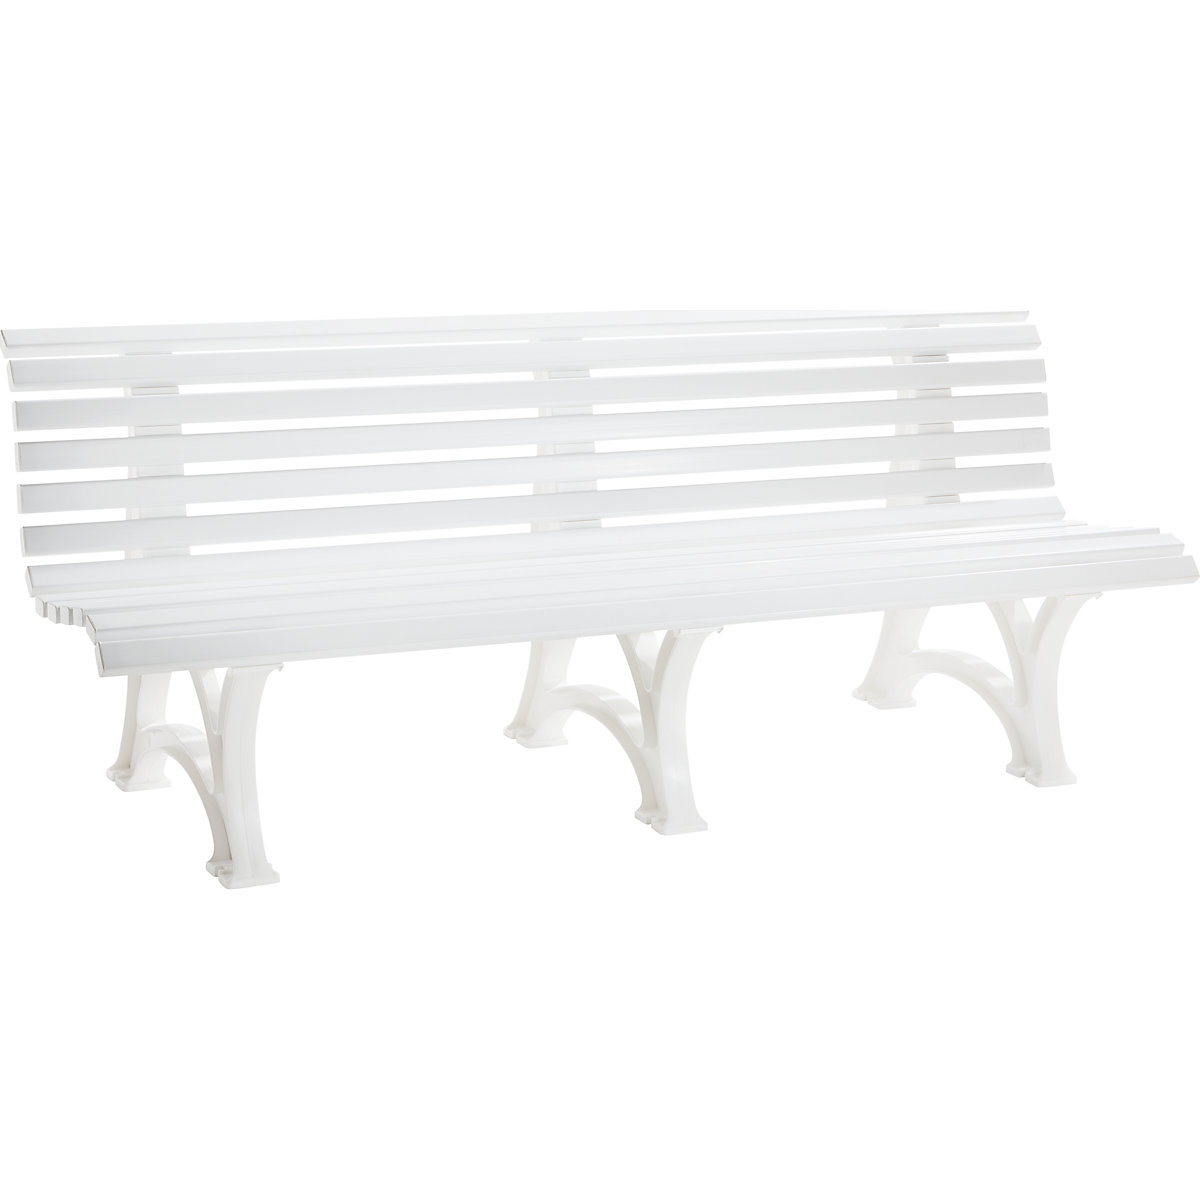 Parková lavička z plastu, s 13 lištami, šířka 2000 mm, bílá-9